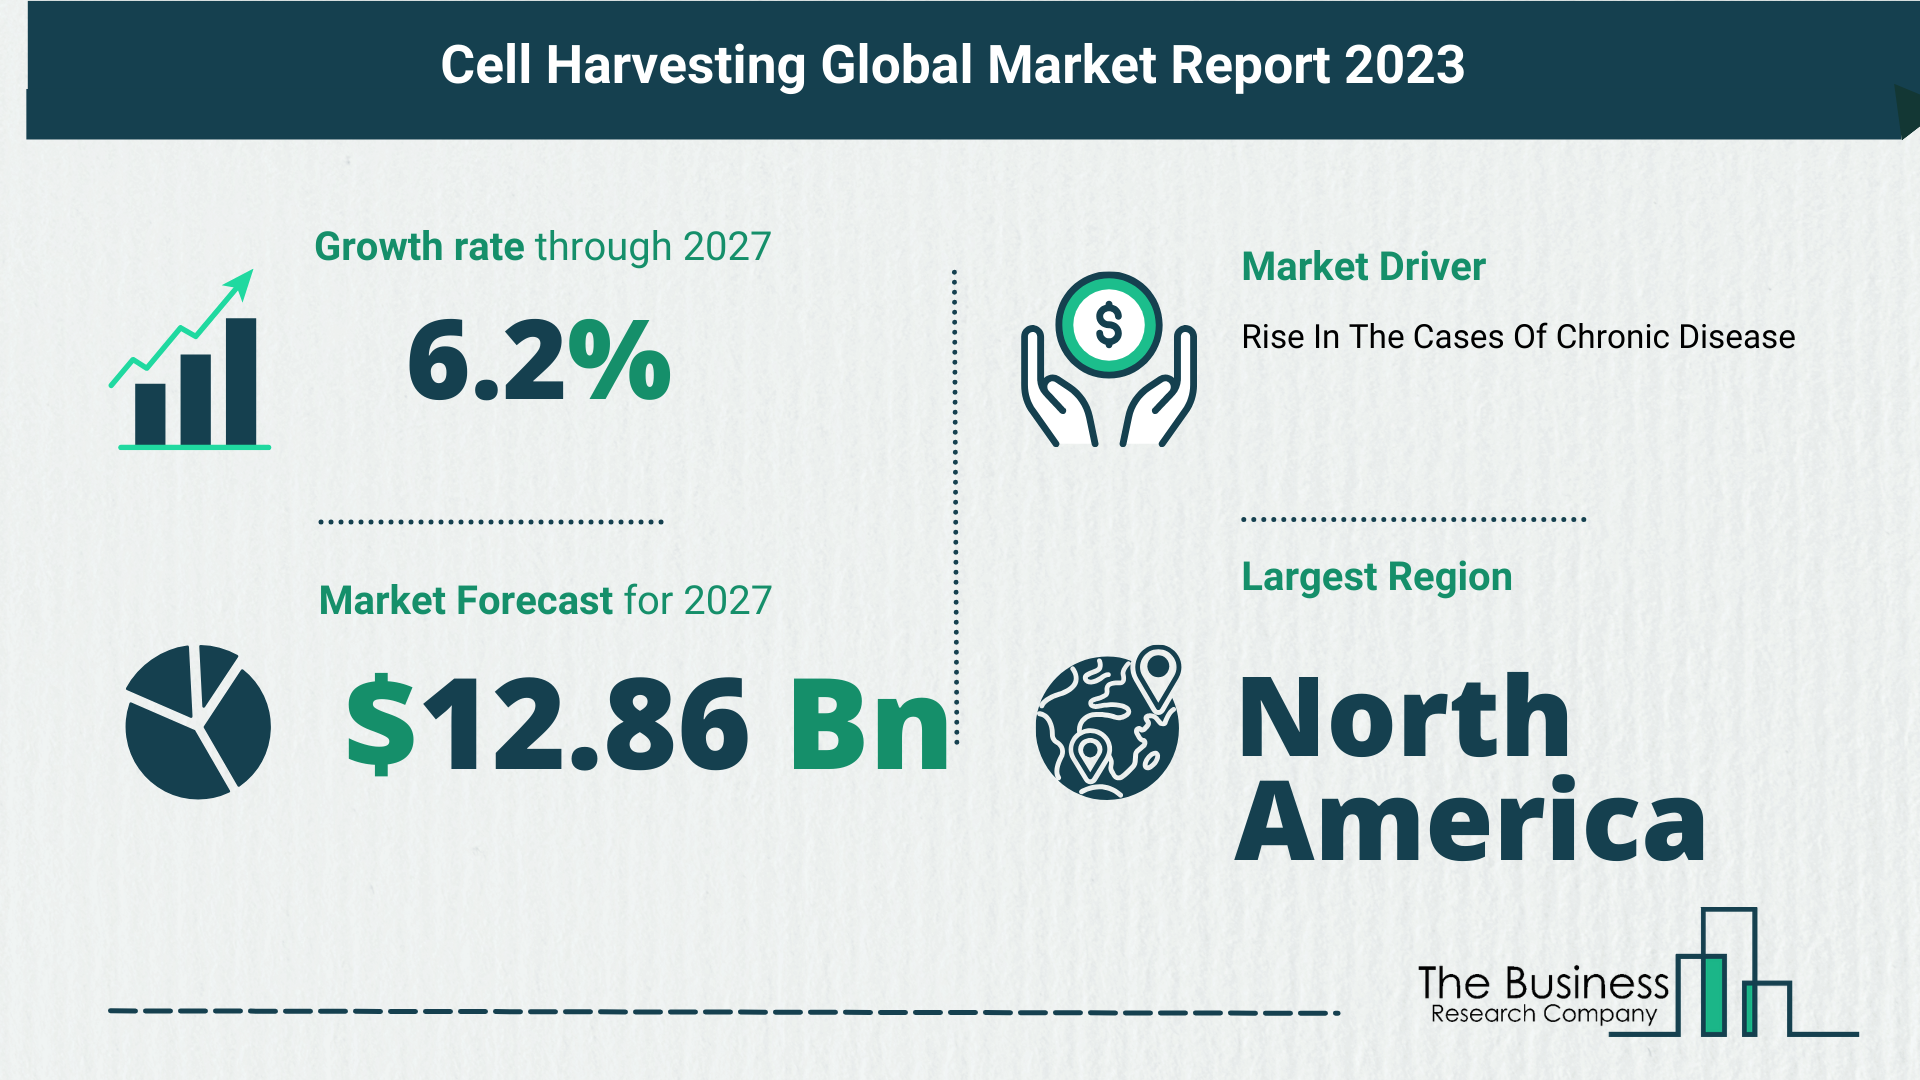 Global Cell Harvesting Market